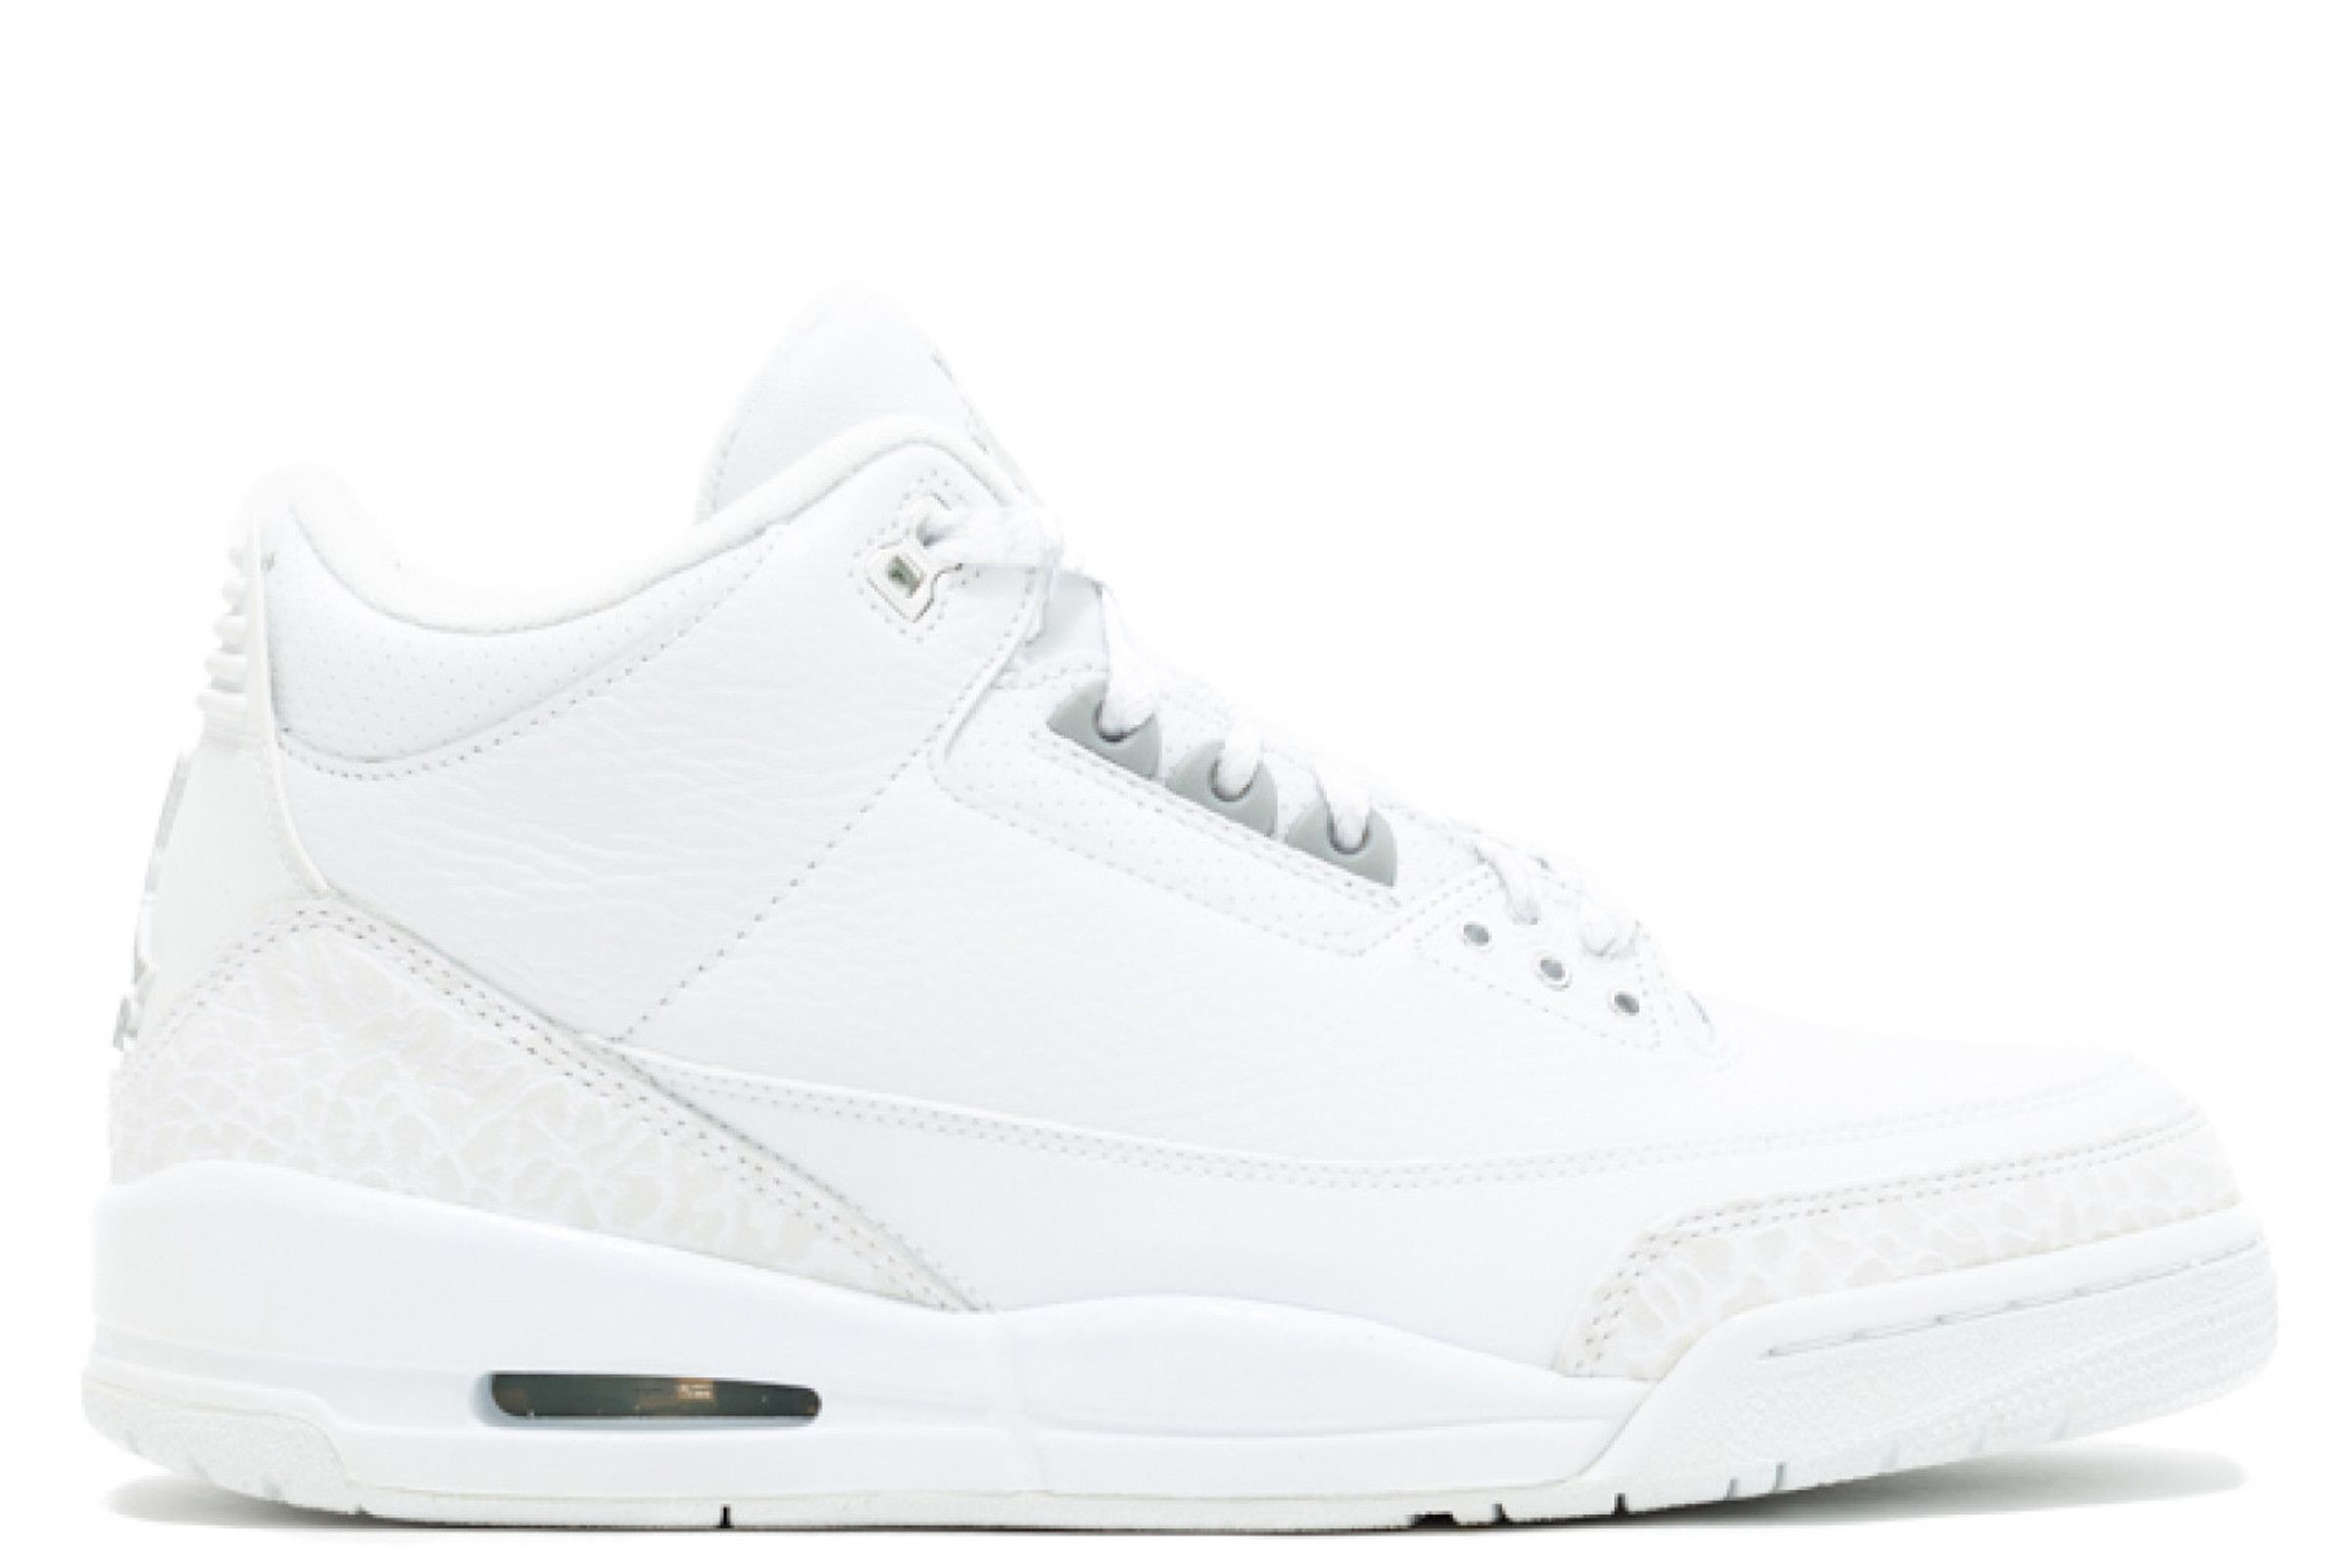 Kanye West in Air Jordan III 'White/Cement' - Air Jordans, Release